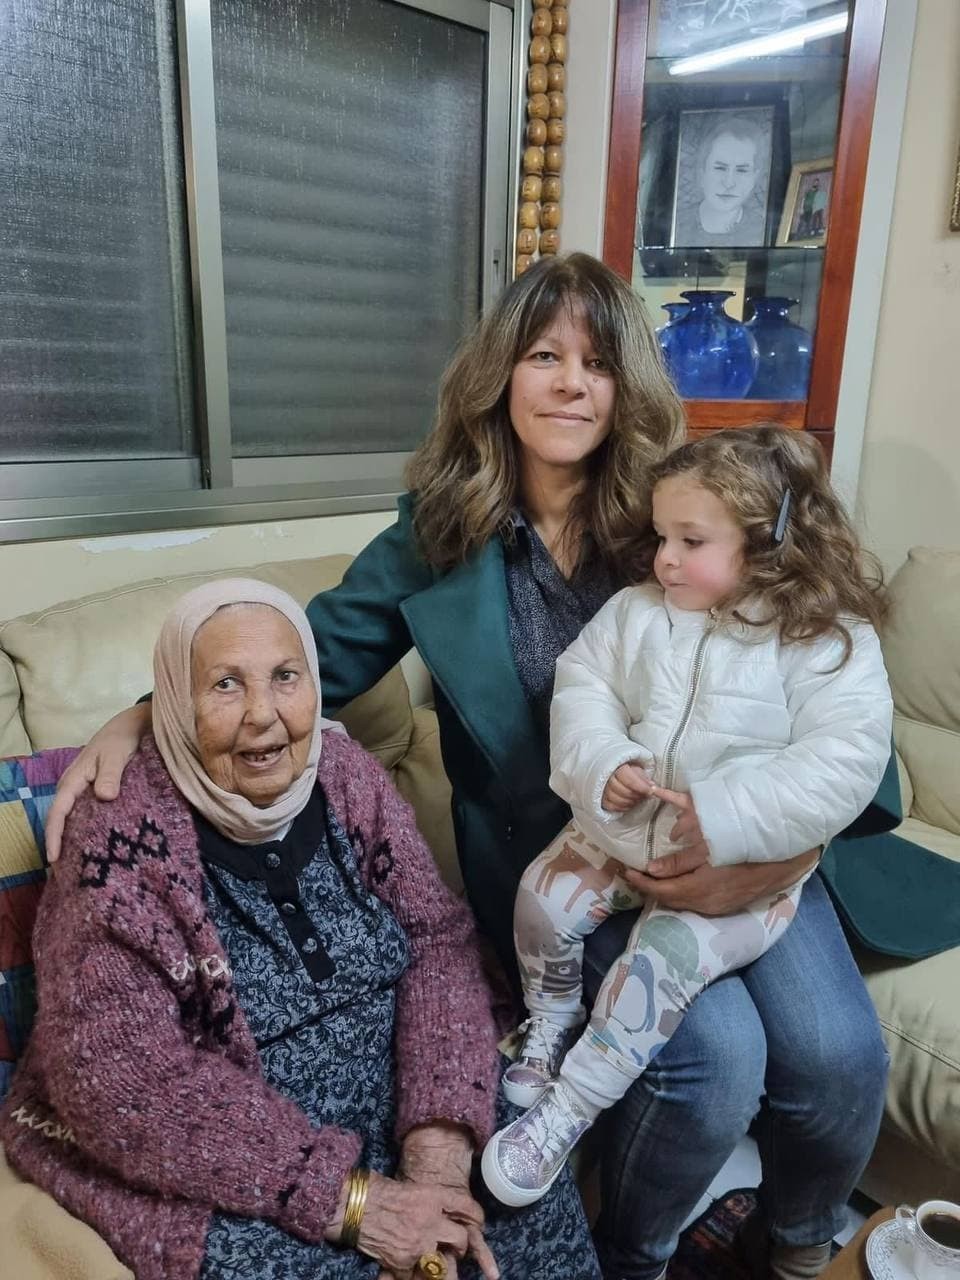 سناء سلامة زوجة الأسير وليد دقة وطفلته ميلاد في زيارة لوالدة الأسير كريم يونس الذي يعانق الحرية بعد عام من الآن بعد قضائه 40 عامًا في سجون الاحتلال.